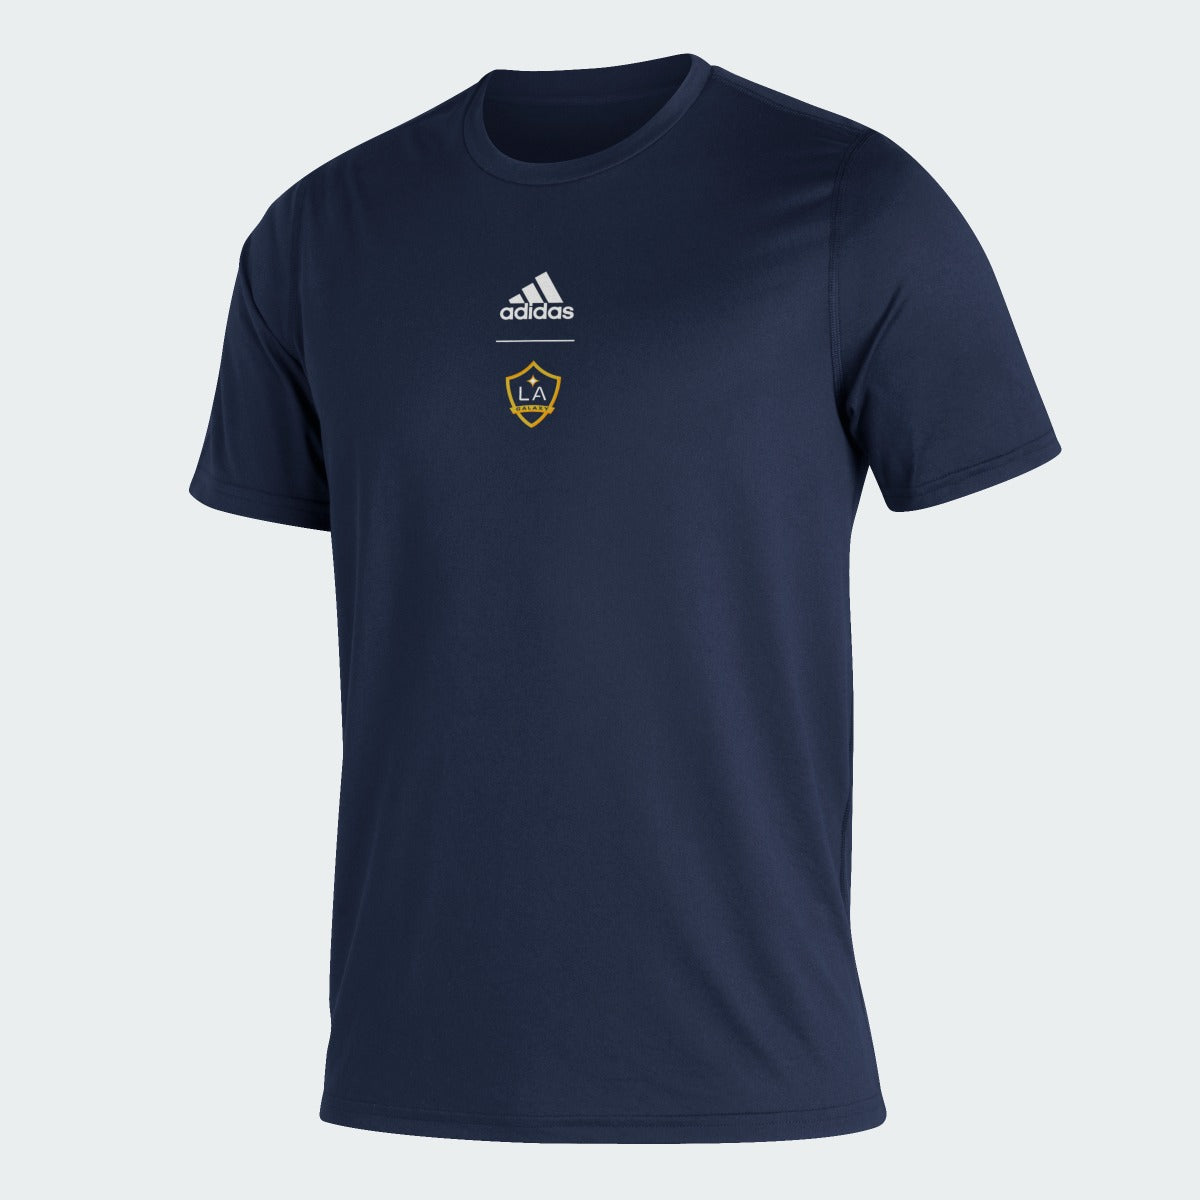 adidas 2022 LA Galaxy Creator Club Tee - Navy (Front)